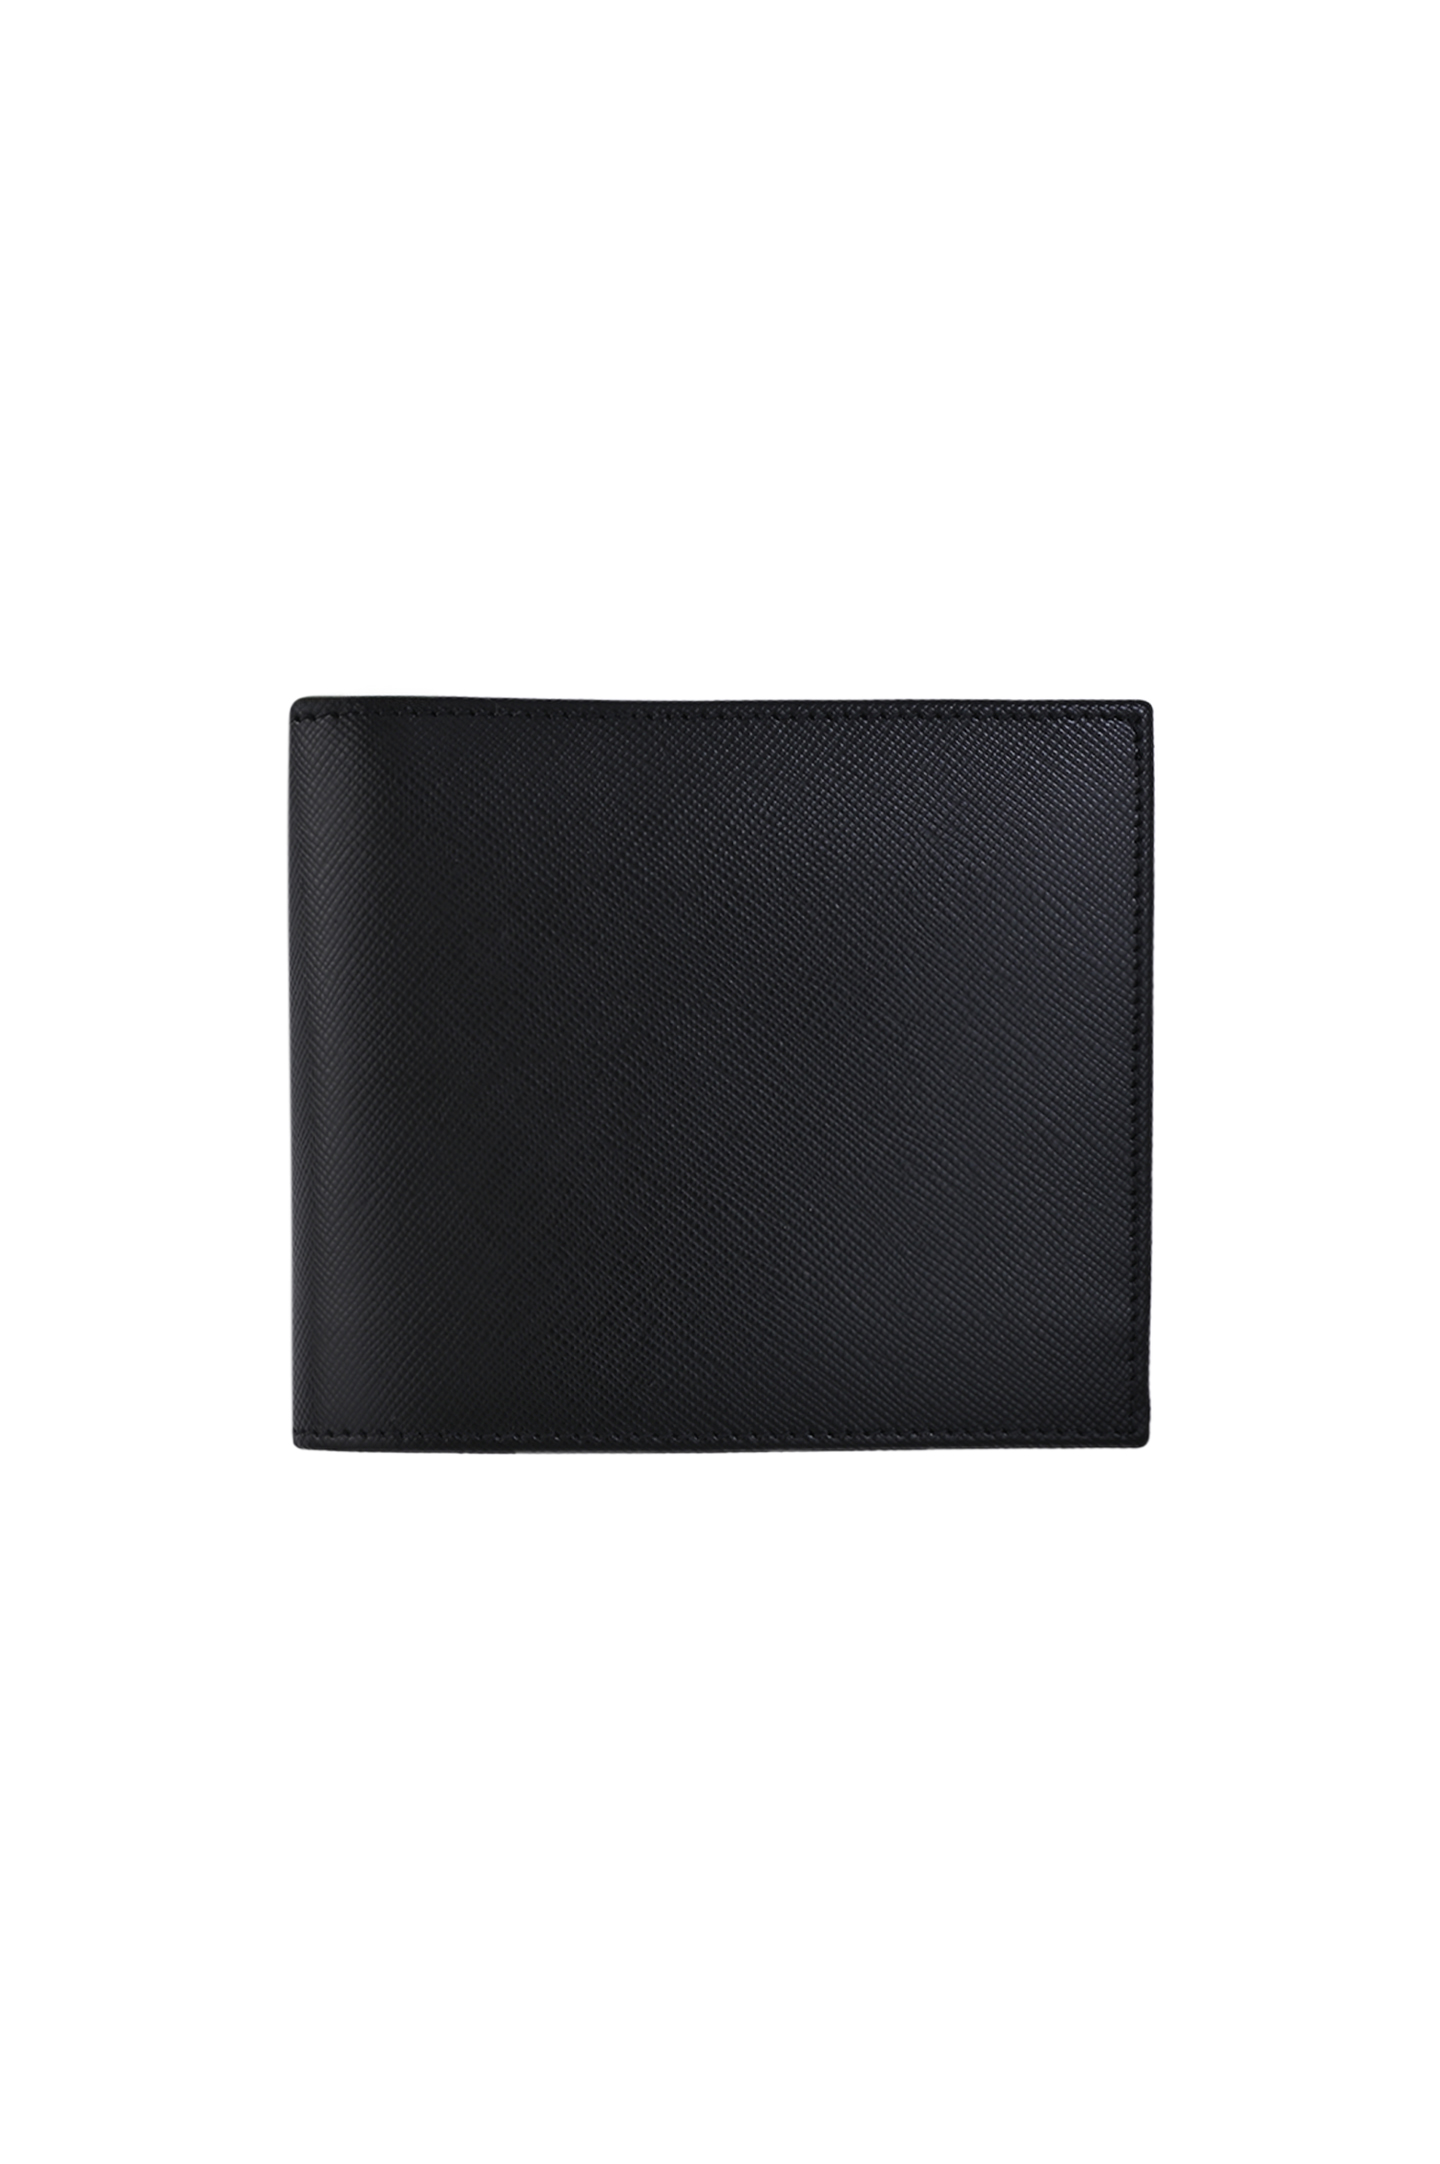 Кожаное портмоне с логотипом KITON UPEA015N010030, цвет: Черный, Мужской